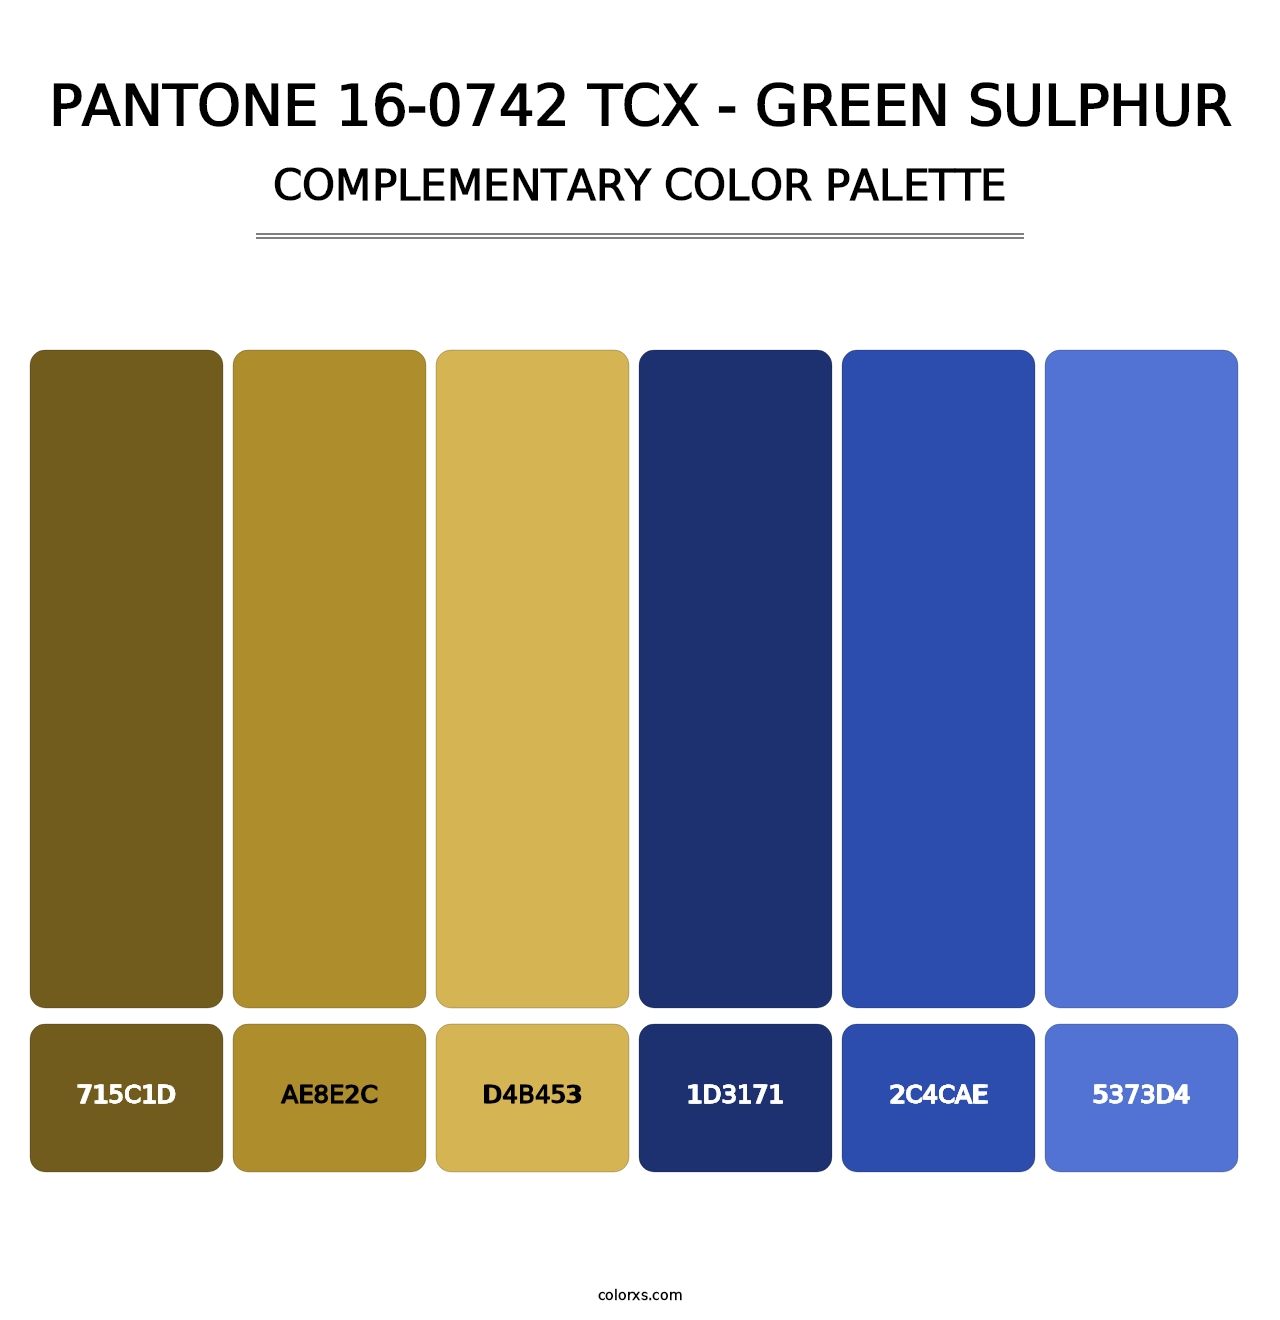 PANTONE 16-0742 TCX - Green Sulphur - Complementary Color Palette